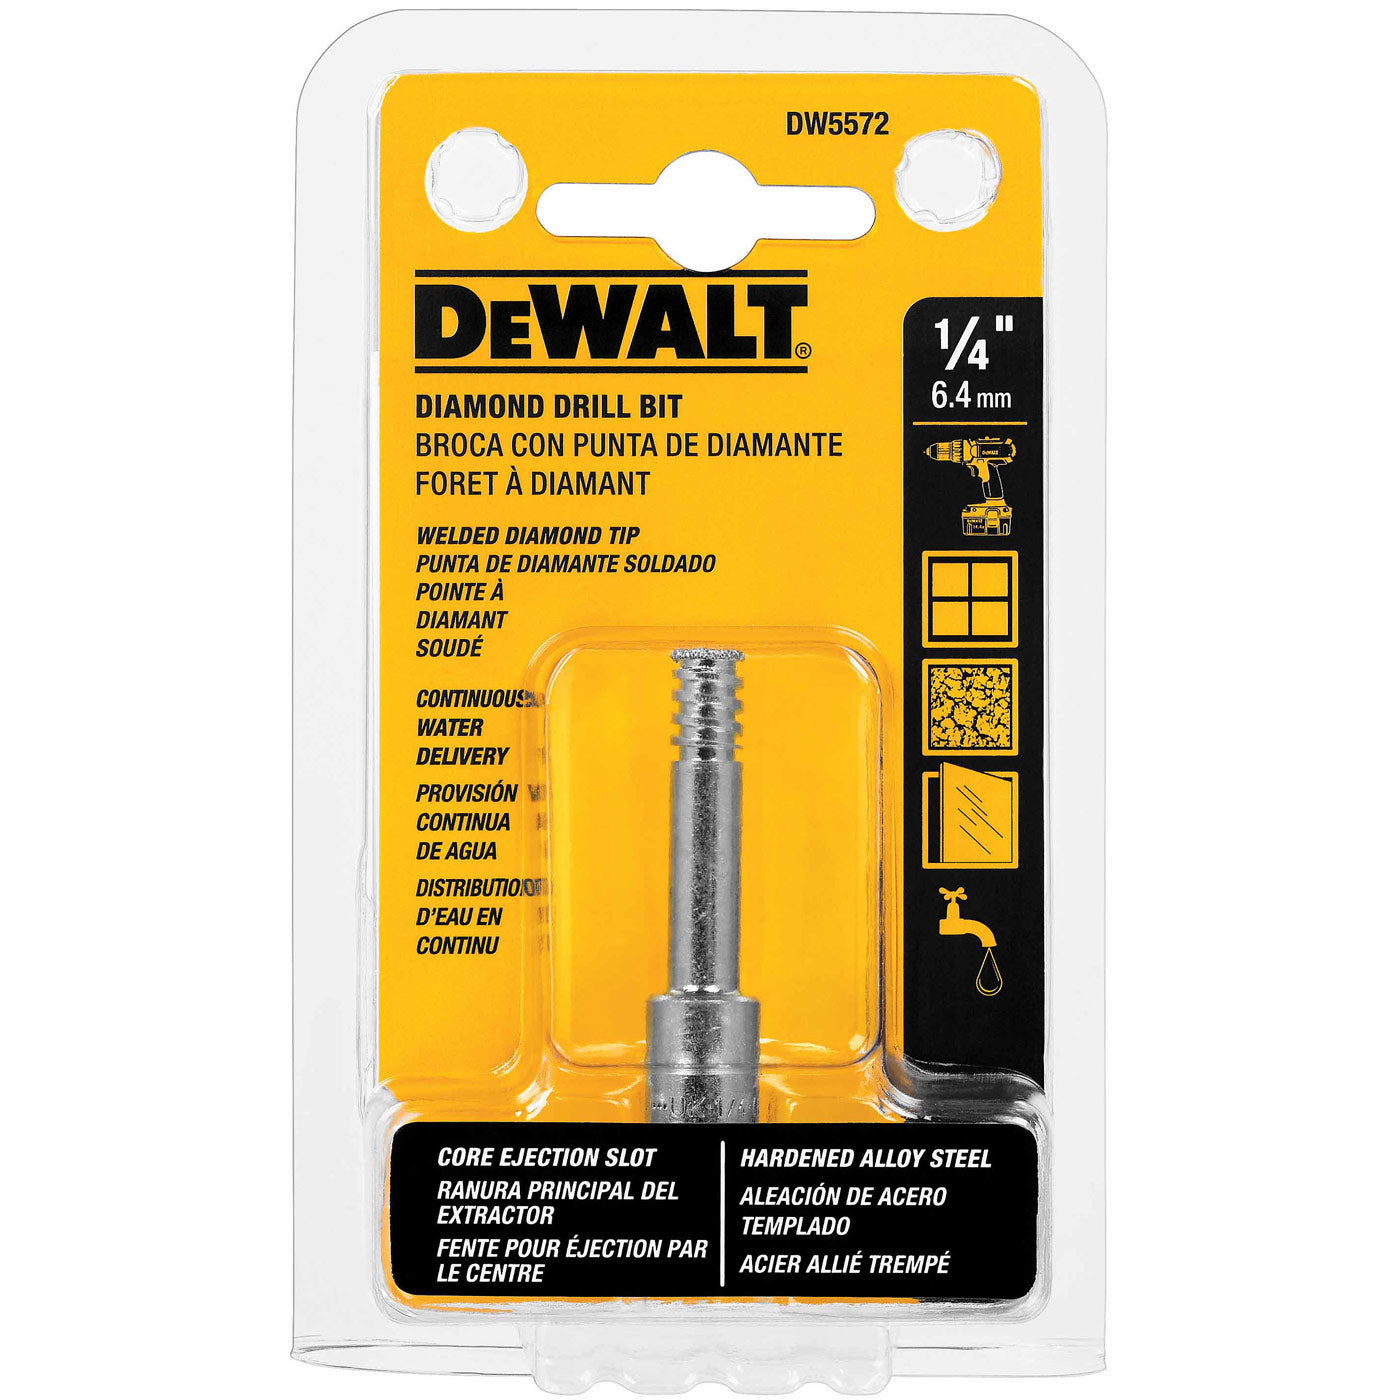 DeWalt DW5572 1/4" Diamond Drill Bit